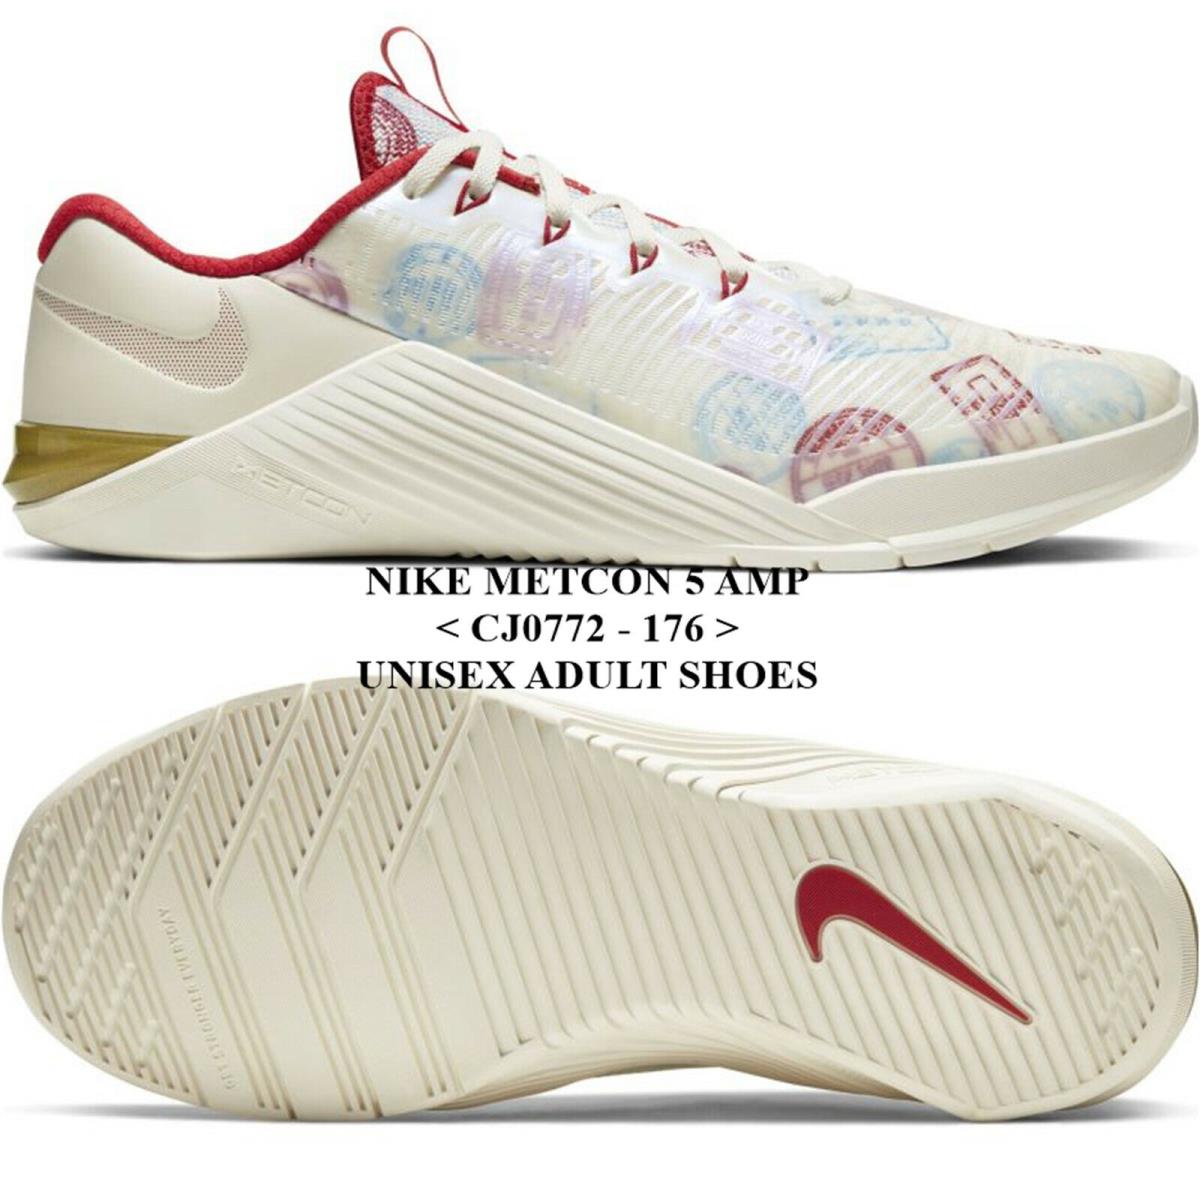 Nike shoes Metcon AMP - SAIL/METALLIC GOLD-GYM RED 0